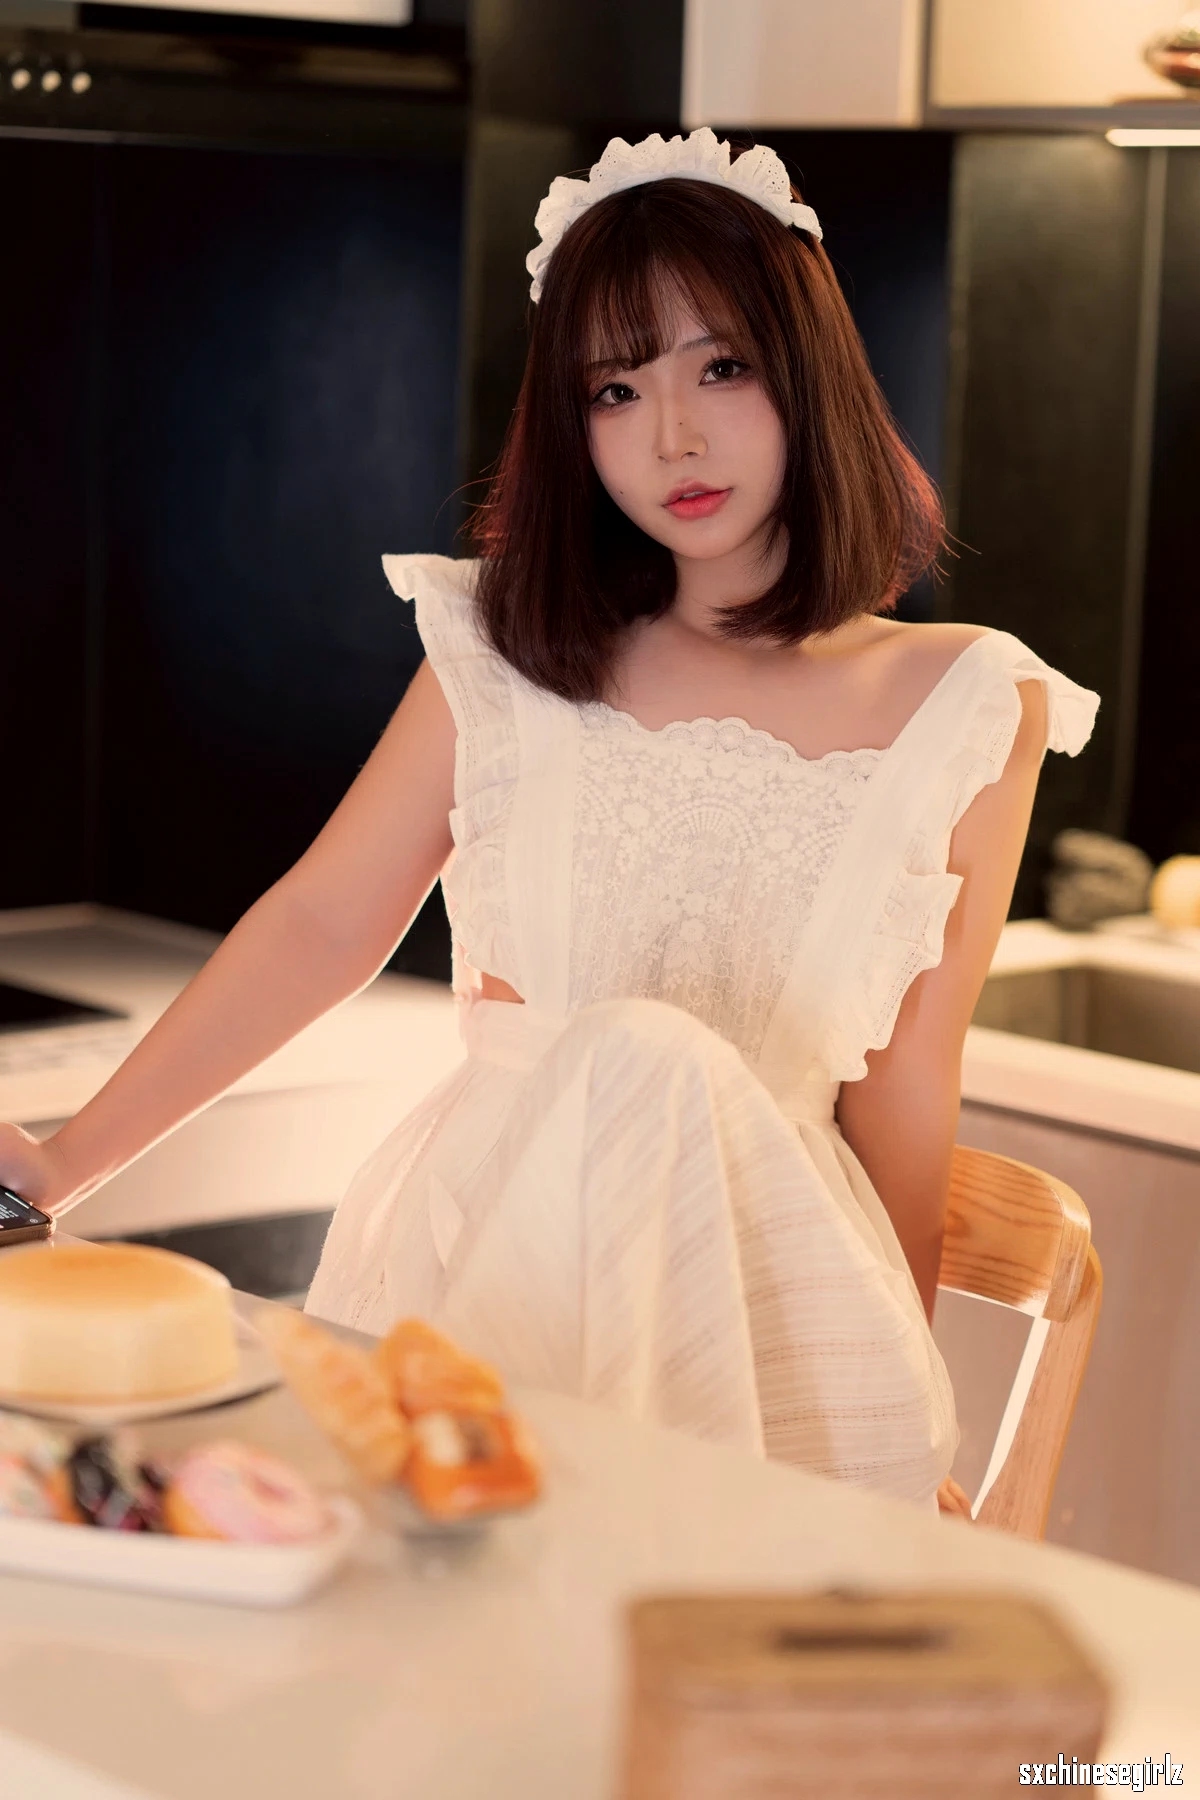 网络美女yuuhui玉汇 - 初恋厨房主题秀丰满身材撩人写真